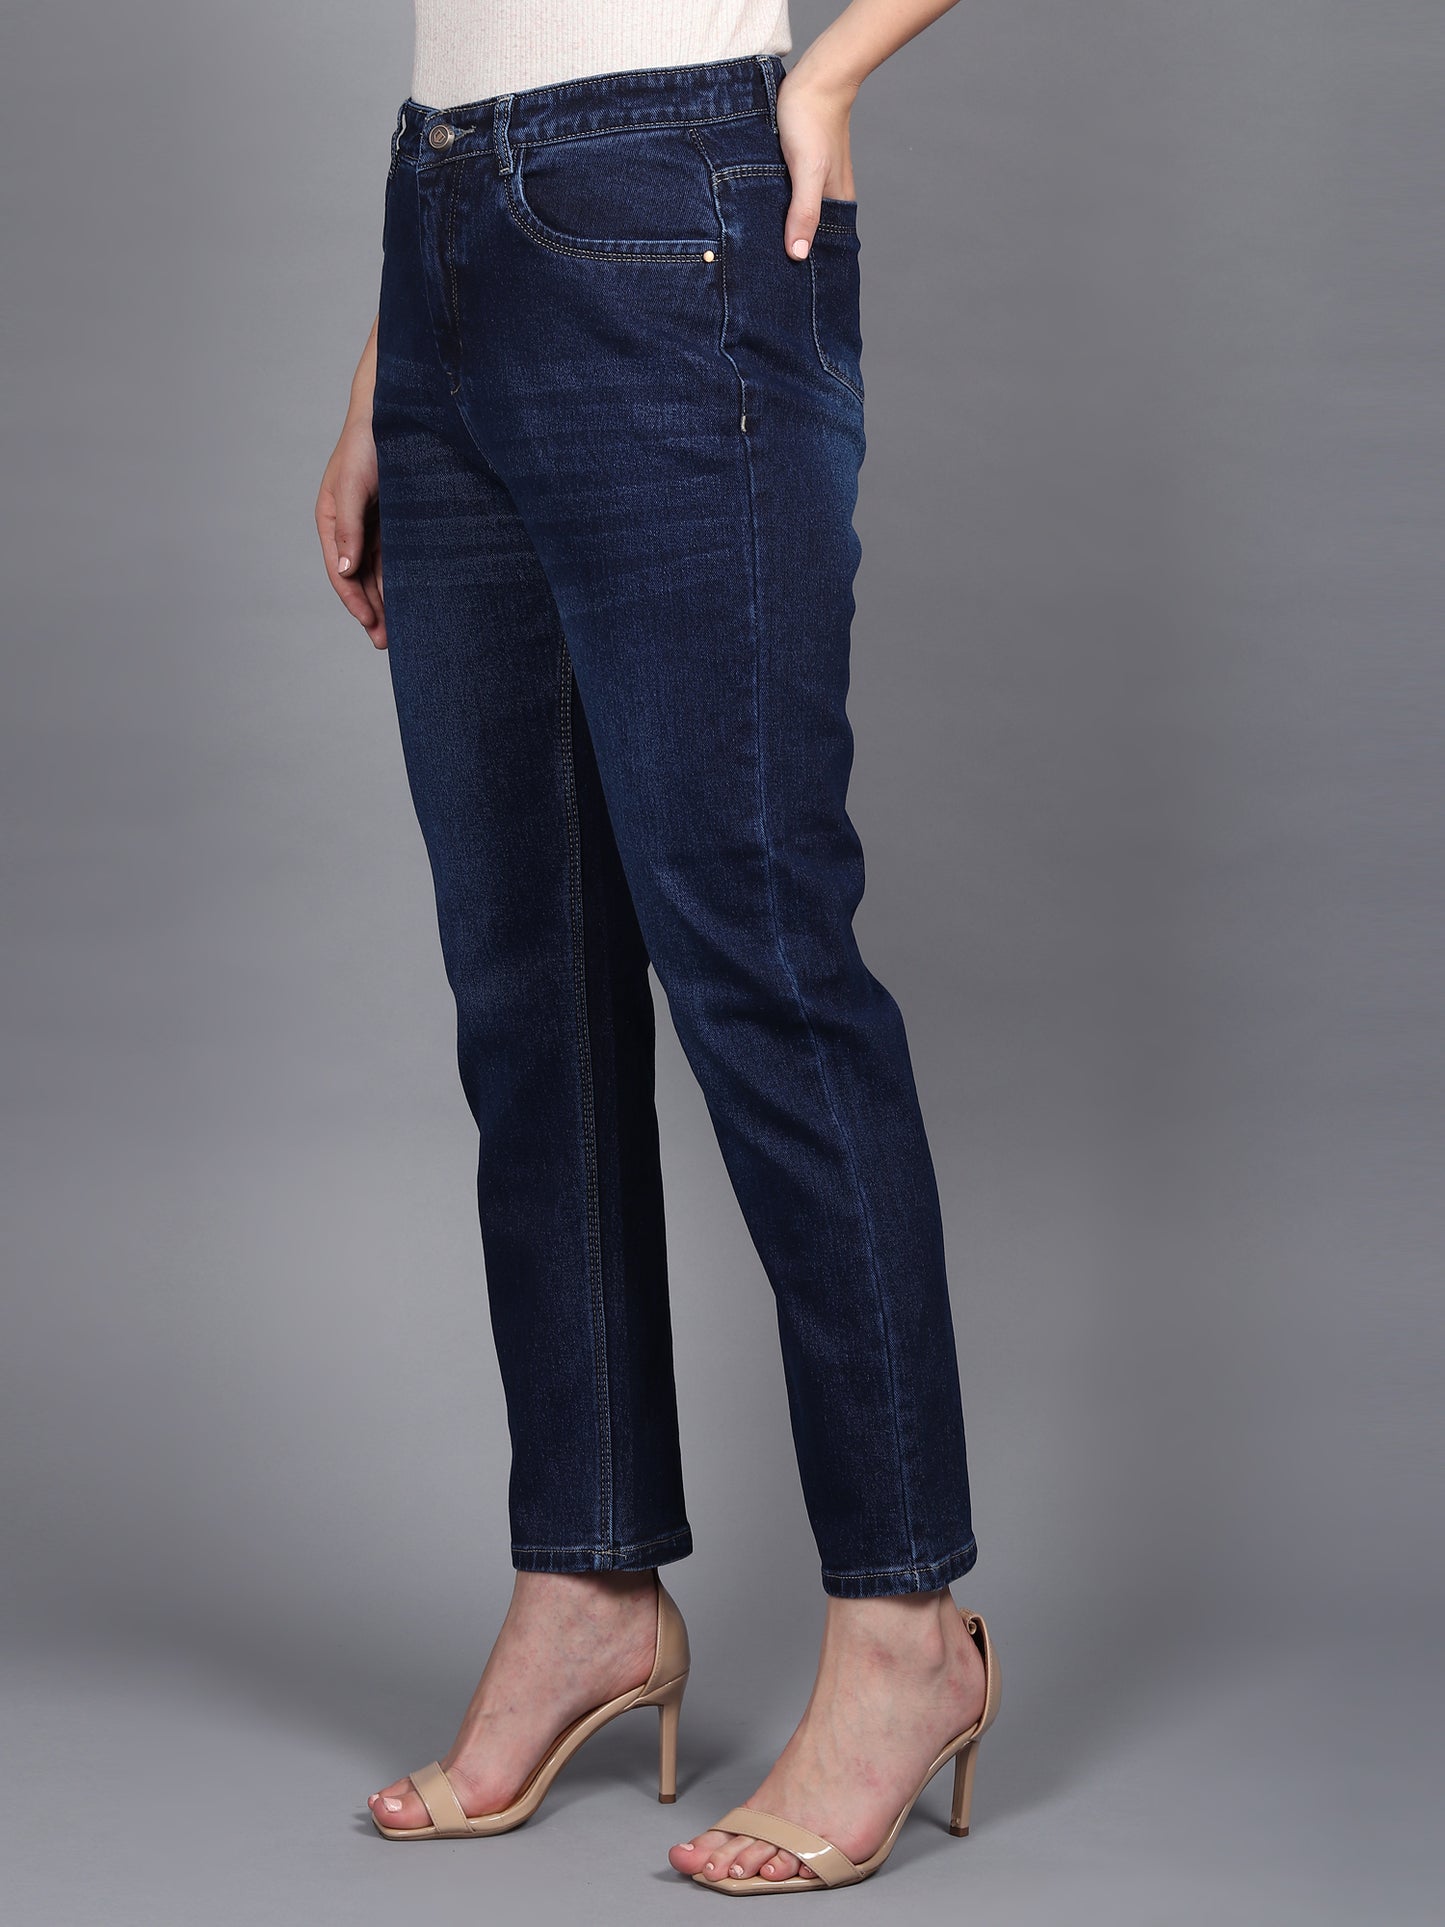 Navy Boyfriend Fit Cotton Lycra Regular Denim Jeans for Women-6041